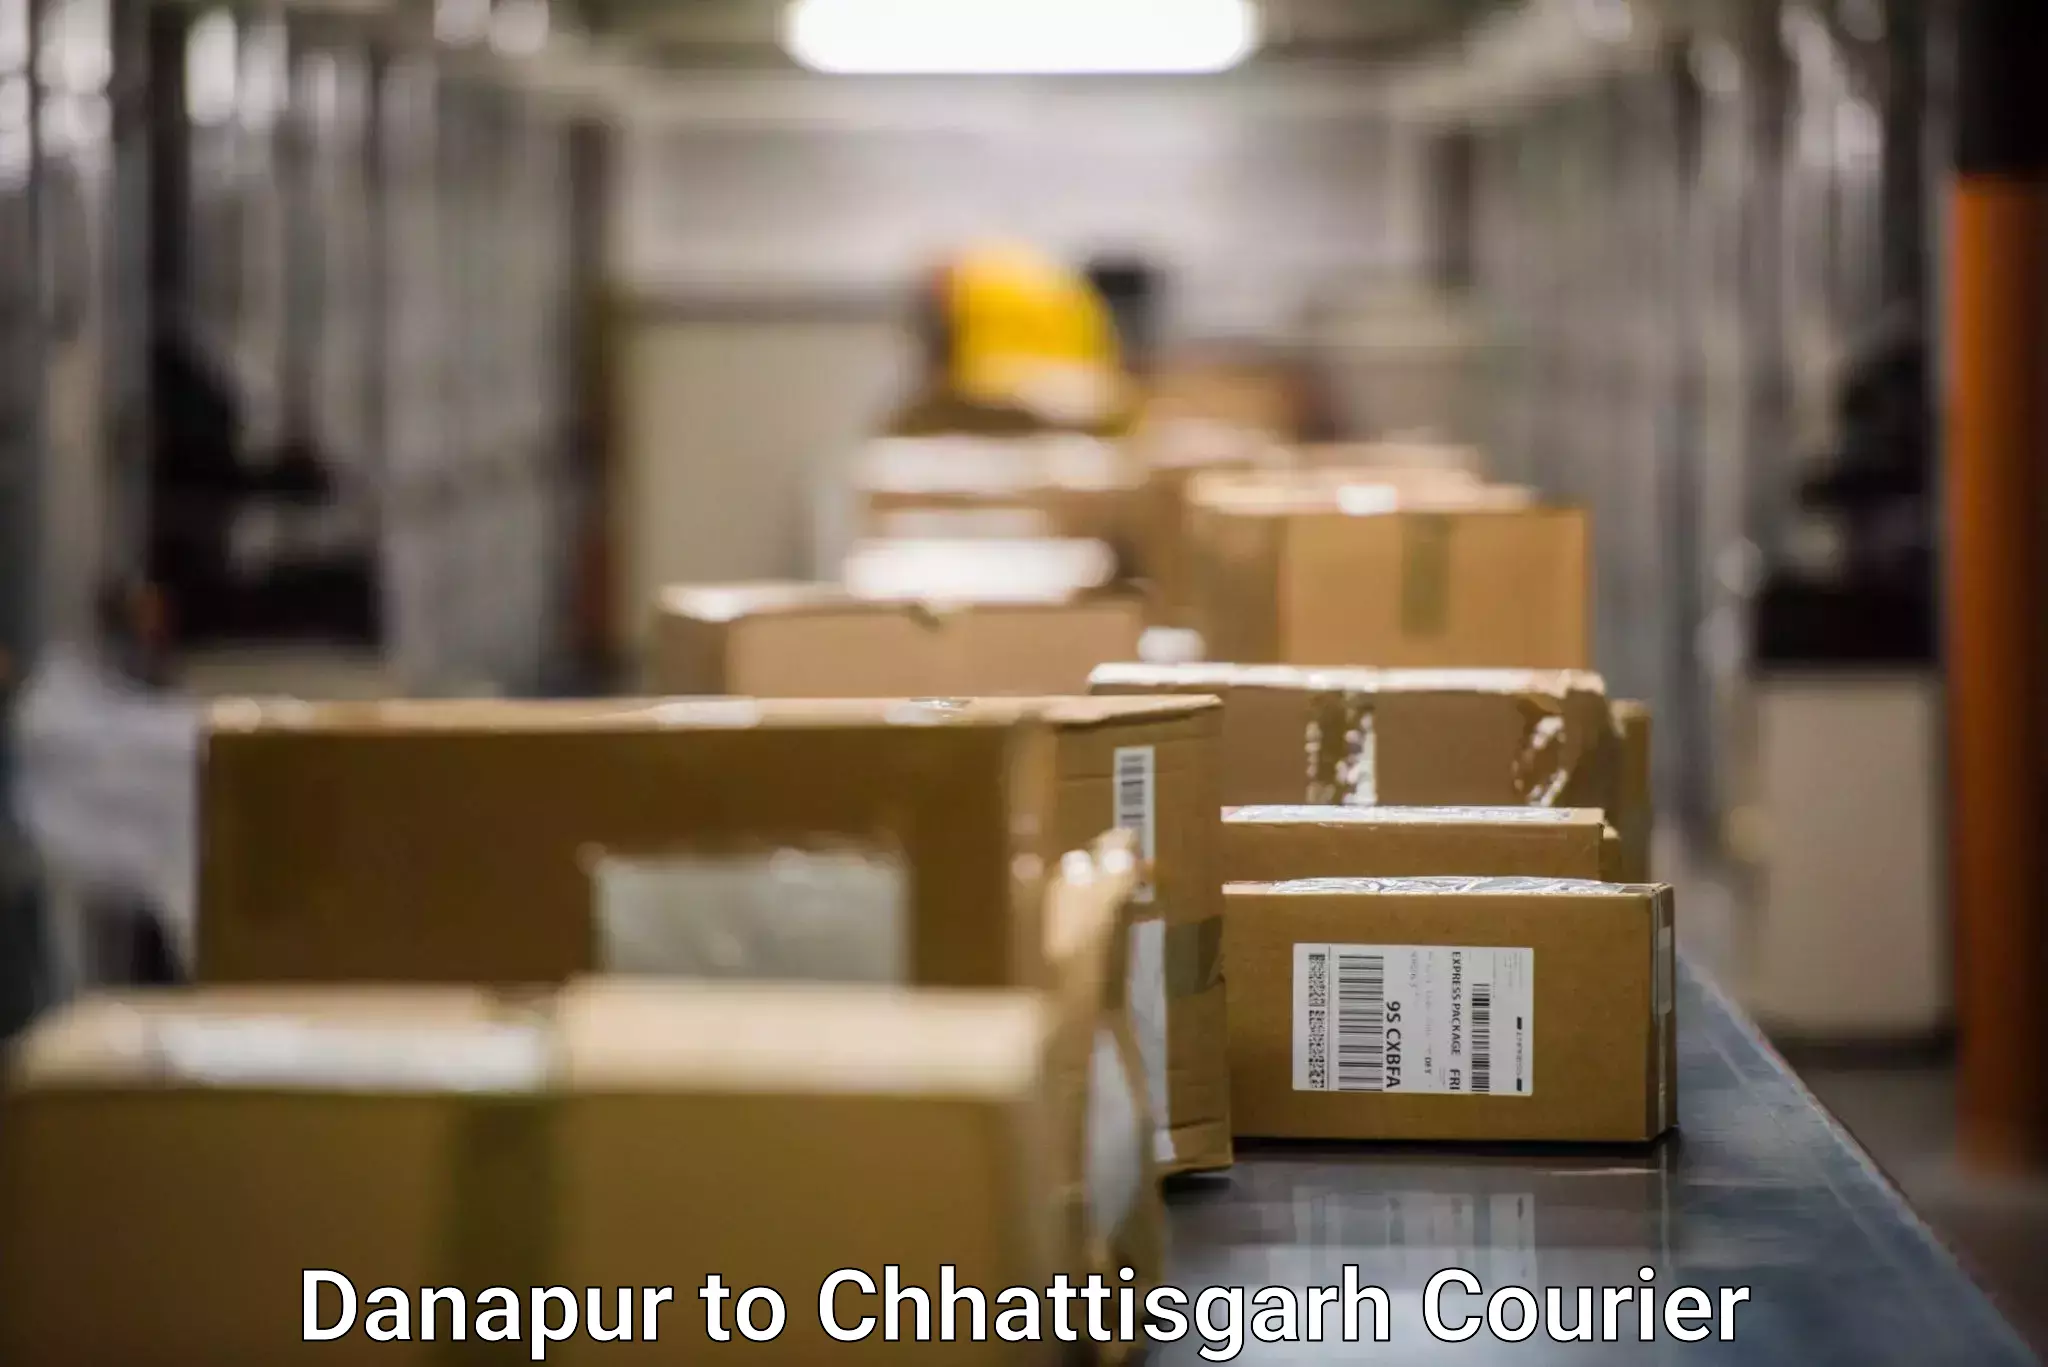 Multi-national courier services Danapur to Chhattisgarh